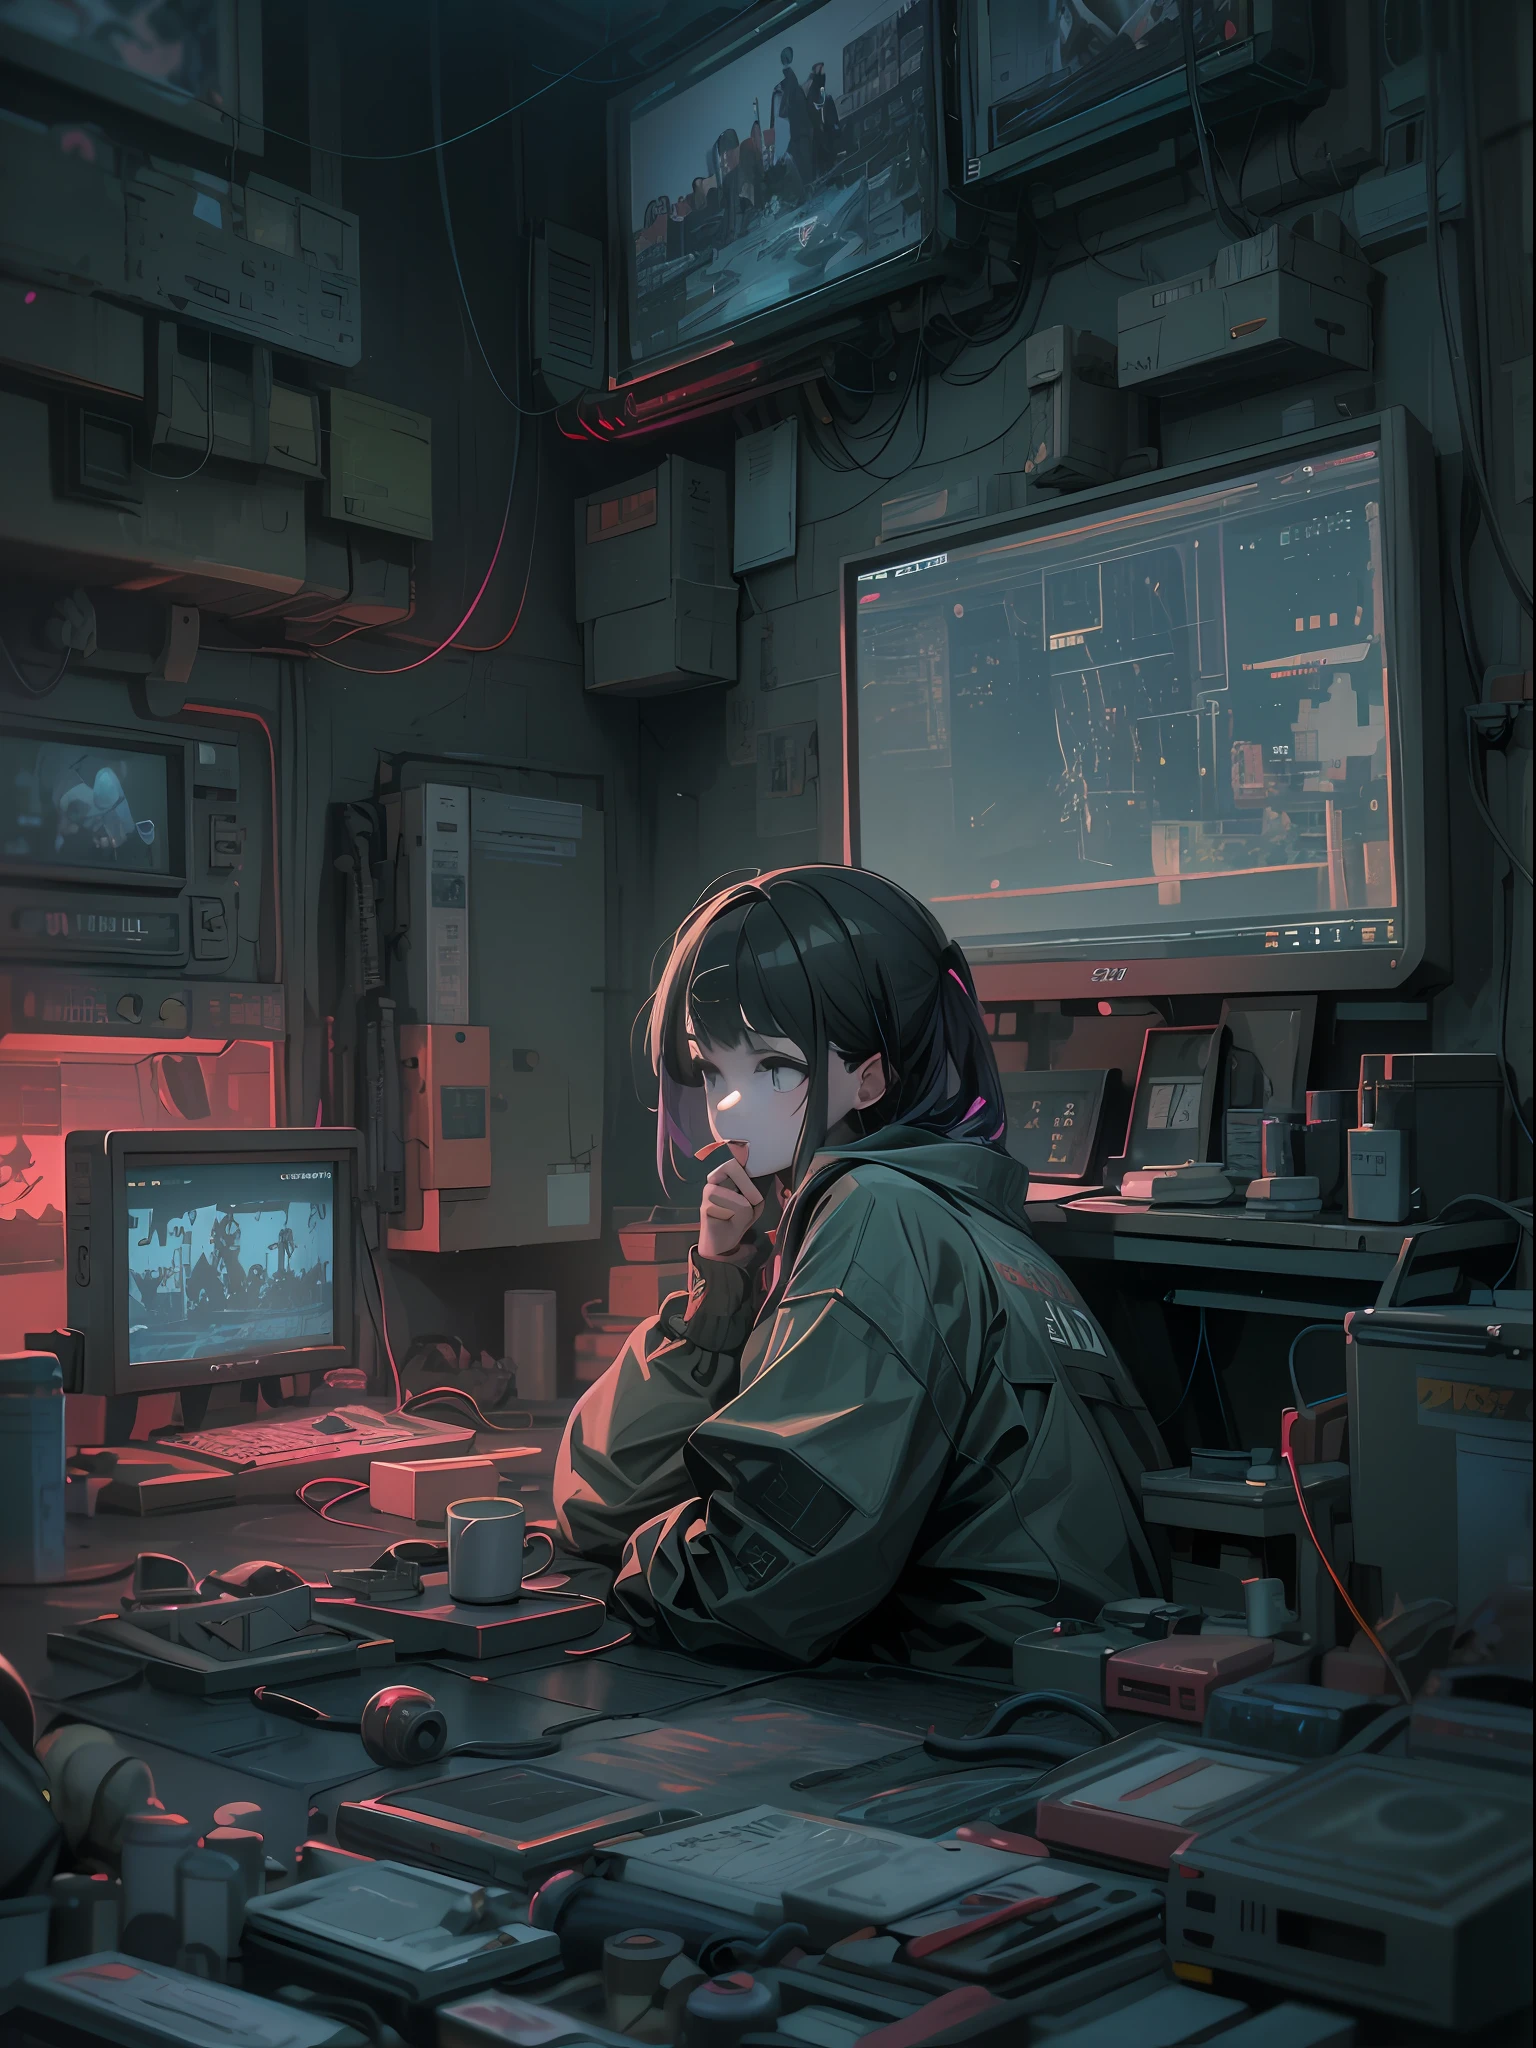 Una escena de anime en la que una mujer se sienta en una mesa con muchos aparatos electrónicos, Digital arte del anime ciberpunk, ciberpunk digital - arte anime, arte del anime ciberpunk, estilo de arte ciberpunk, anime ciberpunk, arte temático ciberpunk, Obra de arte estilo Guviz, Atmósfera ciberpunk, estilo artístico cyberpunk, estilo cyberpunk apagado, ilustración ciberpunk, detailed ilustración ciberpunk, arte ciberpunk digital avanzado